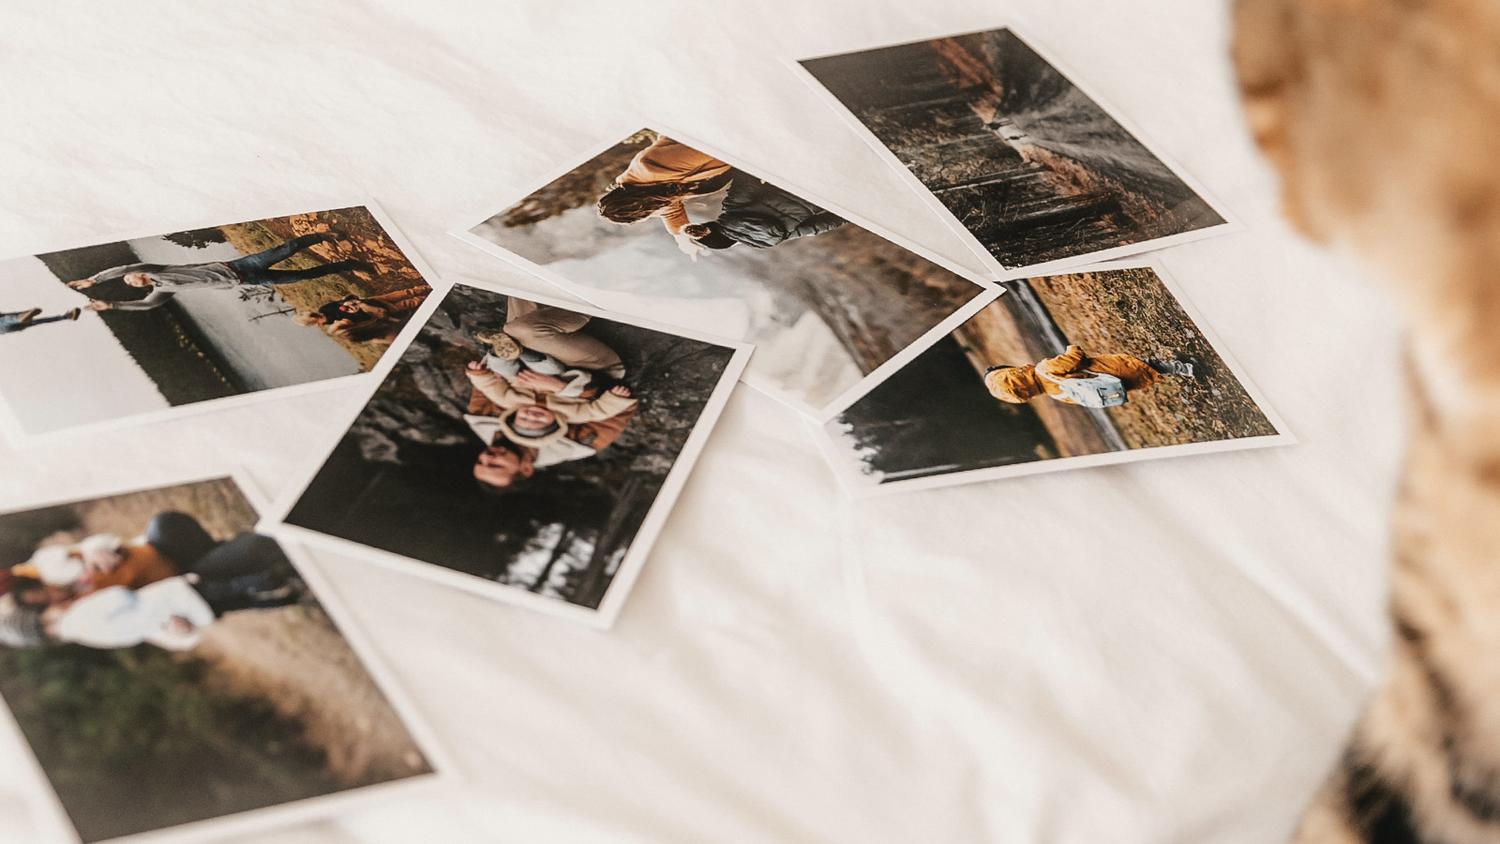 Album photo couple : Créez des souvenirs uniques avec nos albums photo  personnalisés pour couples